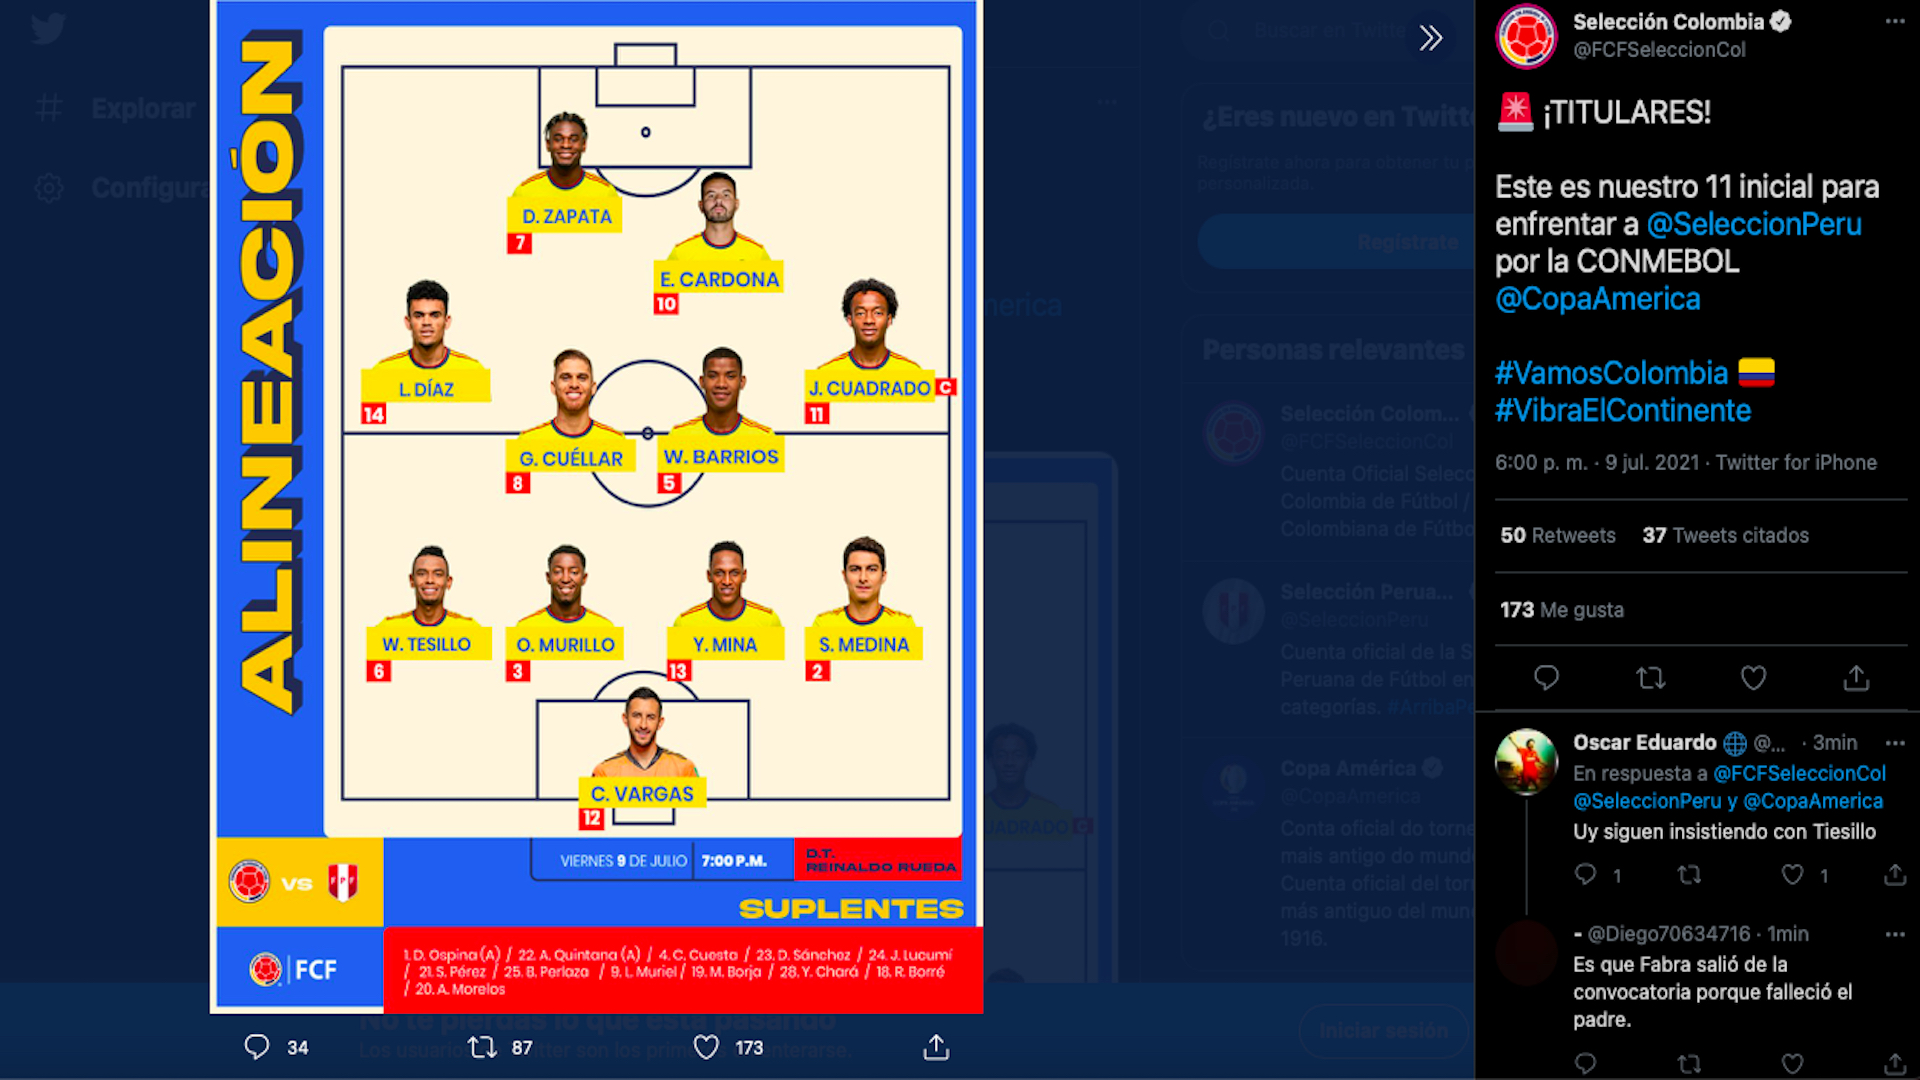 Alineación - selección Colombia, viernes 9 de julio, cuartos de final Copa América 2021 vs. Perú / (Twitter: @FCFSeleccionCol).